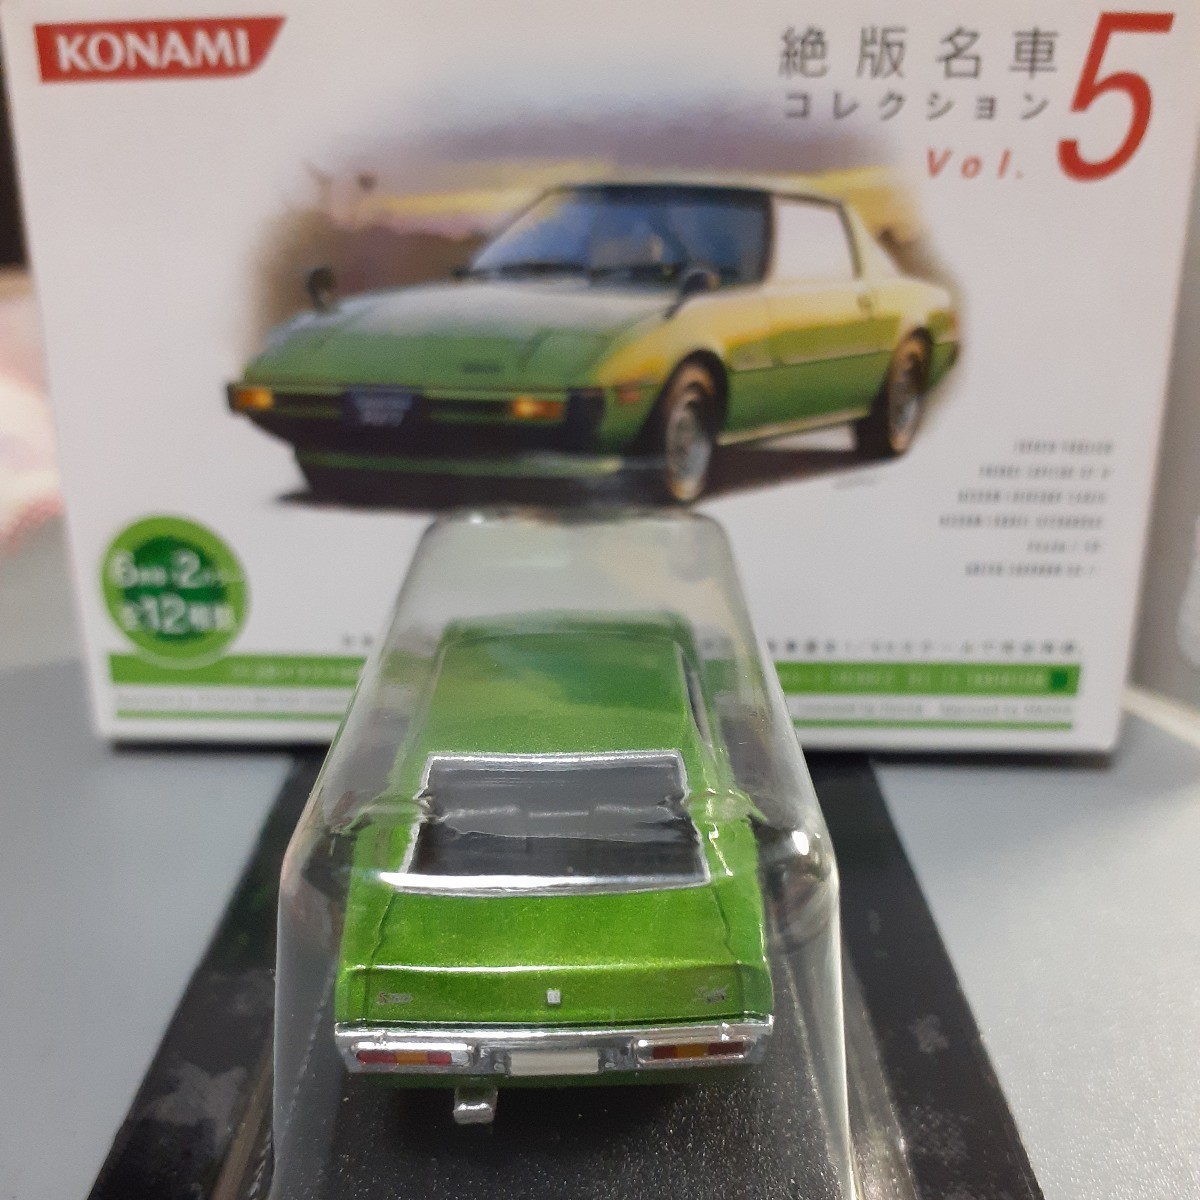 [1B] Konami 1/64 распроданный известная машина коллекция Vol.5 Nissan Laurel HT2000SGX металлик зеленый 1972 год 